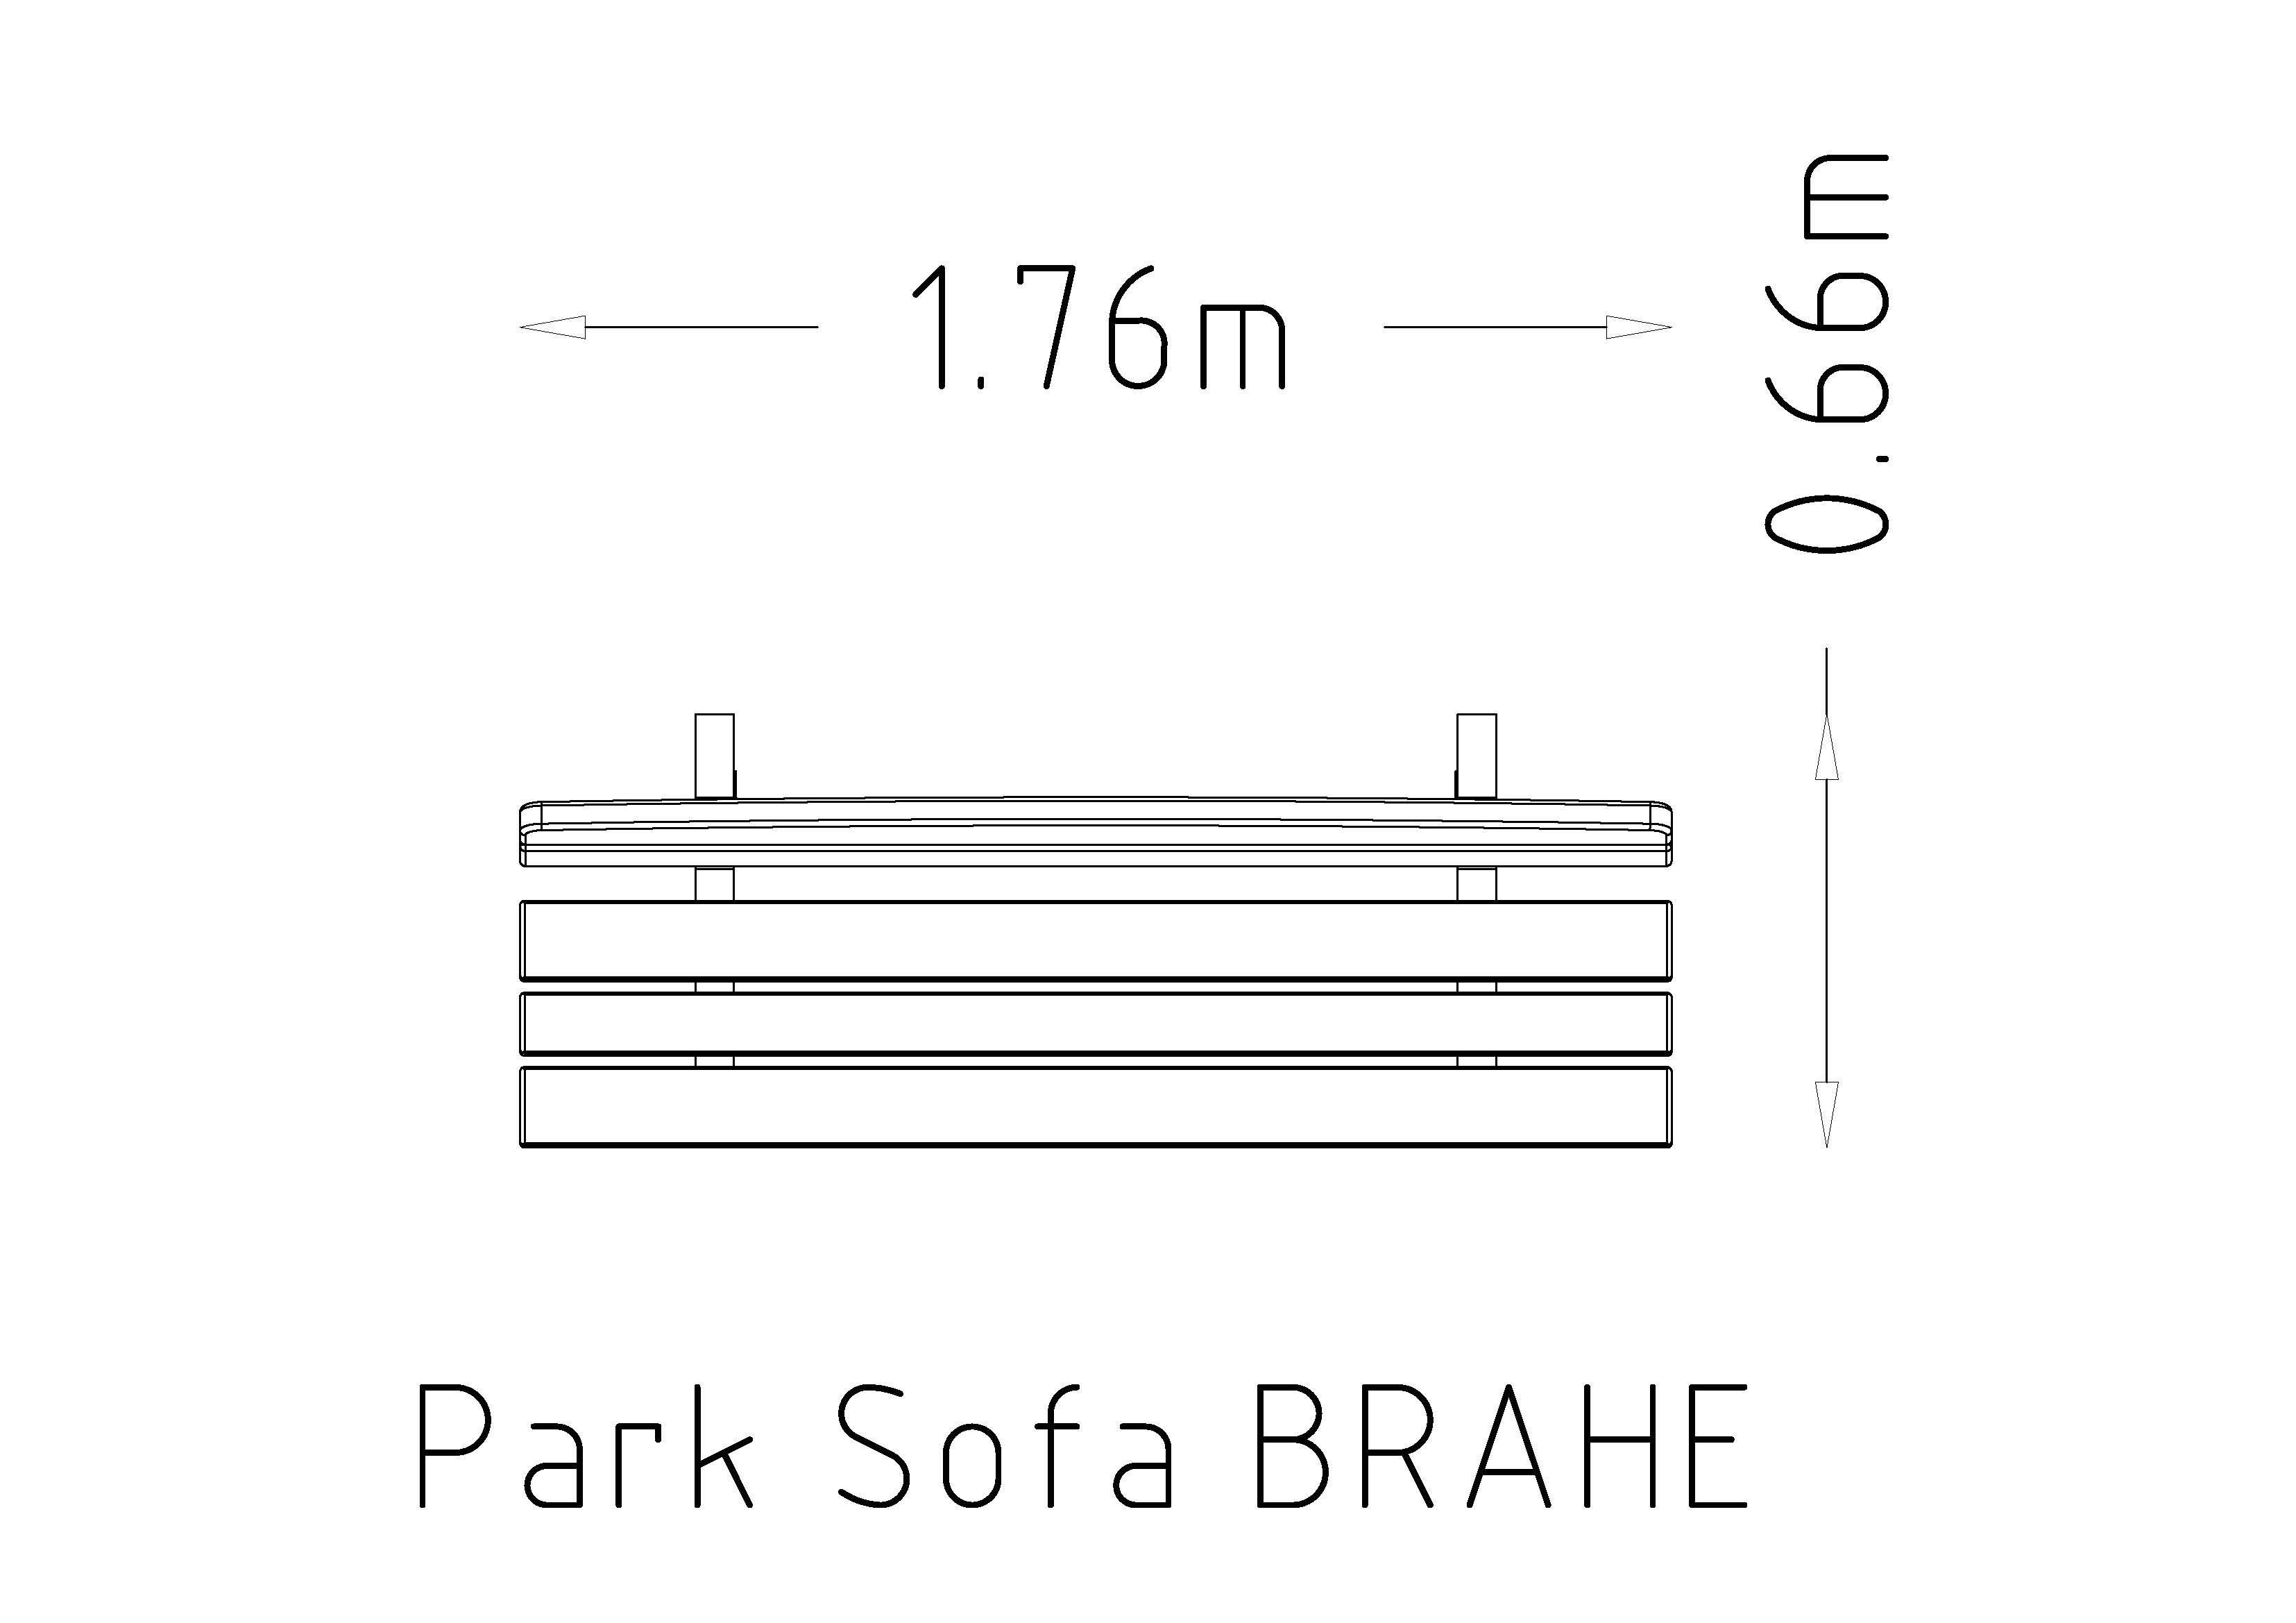 Park Sofa Brahe